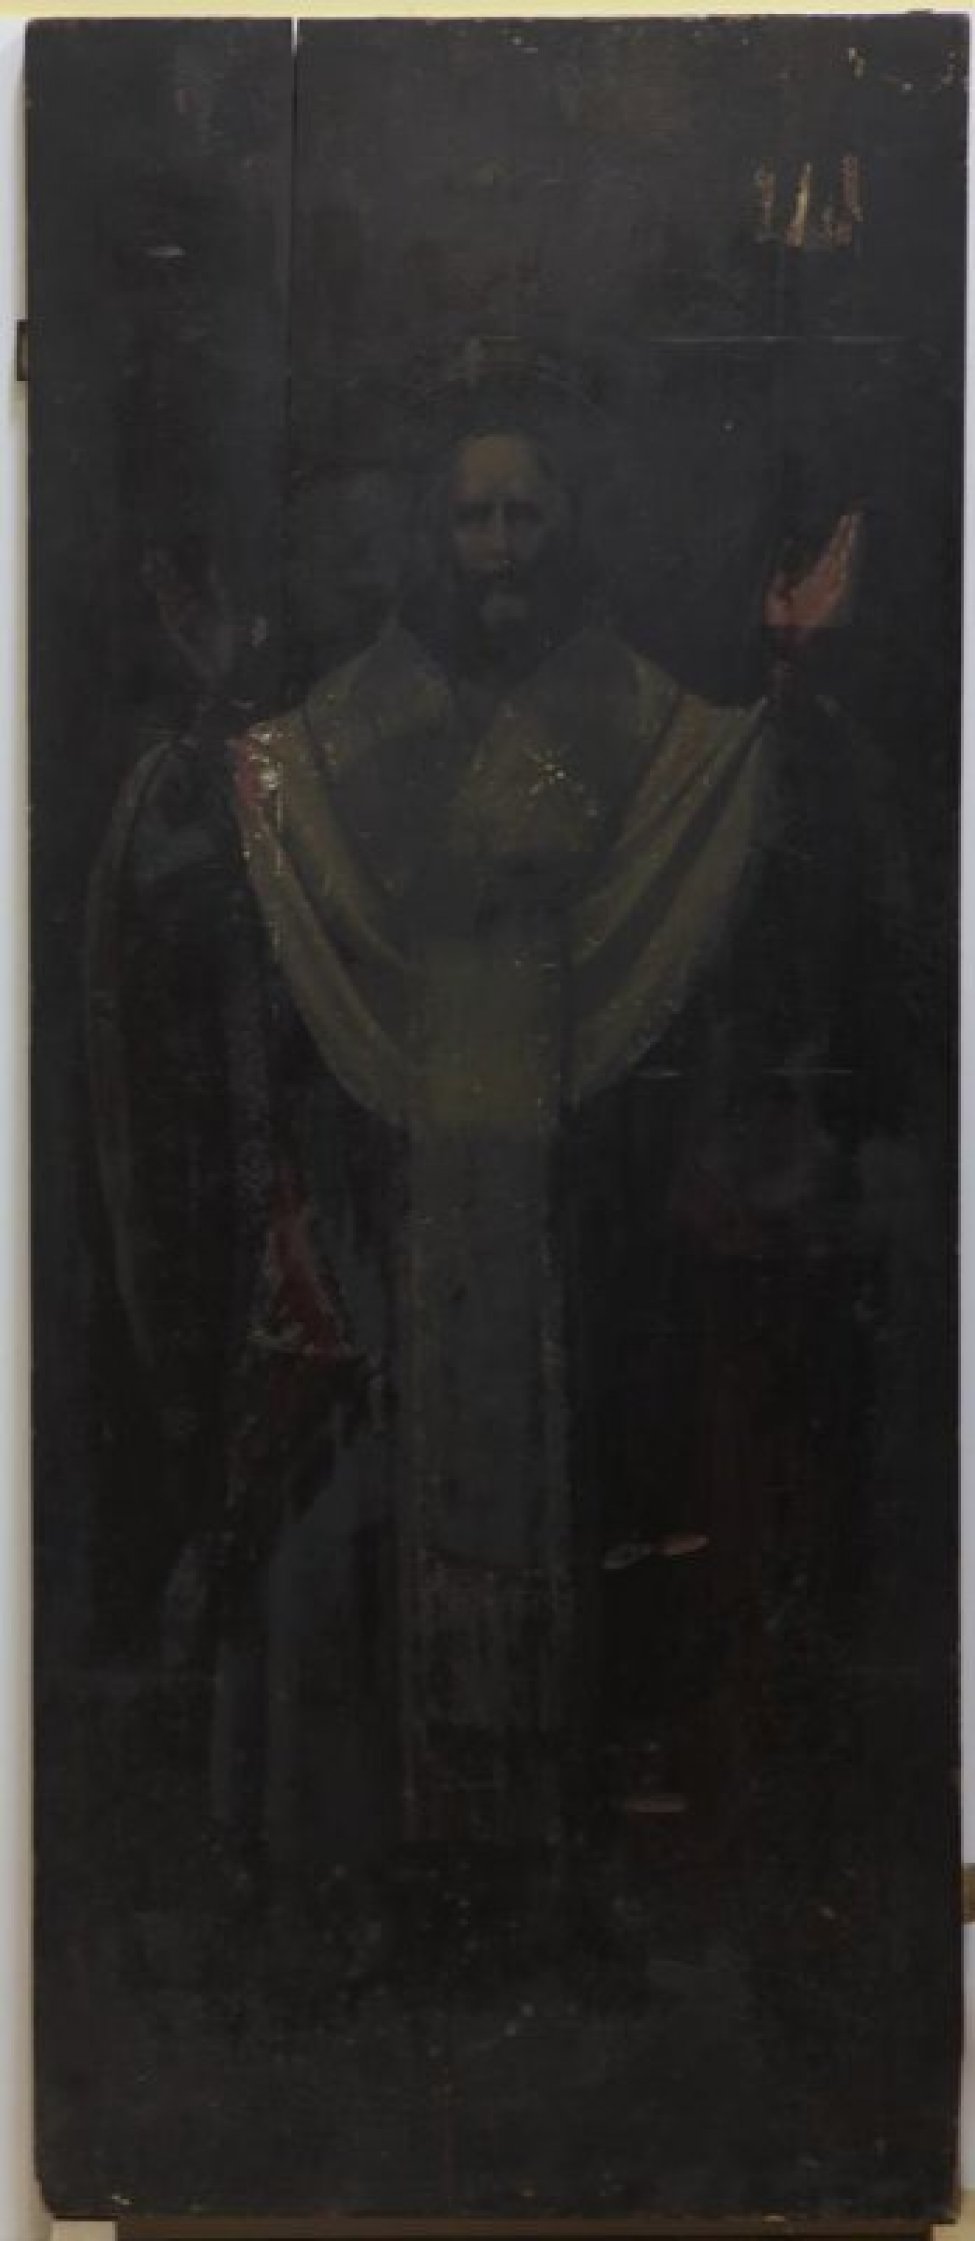 Доска: Икона без выемки, с двумя врезными шпонками.
Изображен святой в епископском облачении, с руками, поднятыми вверх, в рост, лицо и фигура обращены прямо к зрителю.